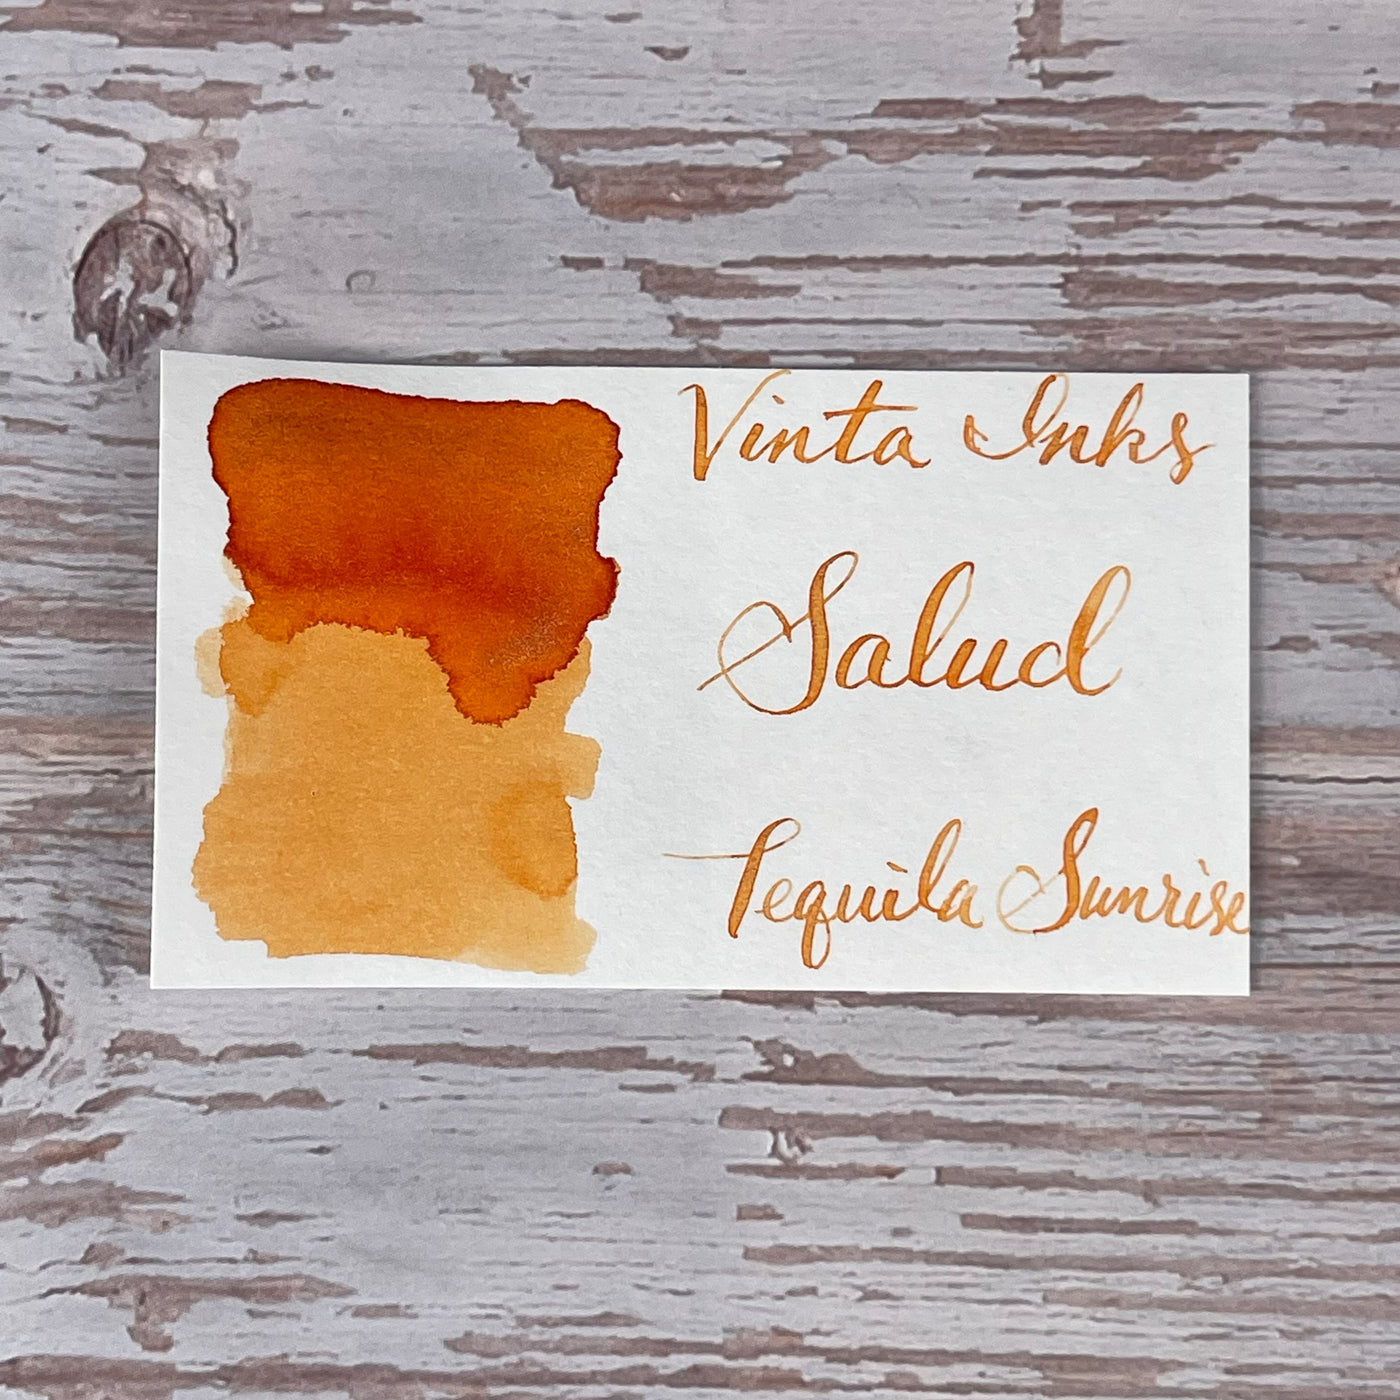 Vinta Tequila Sunrise (Salud) - 30ml Bottled Ink